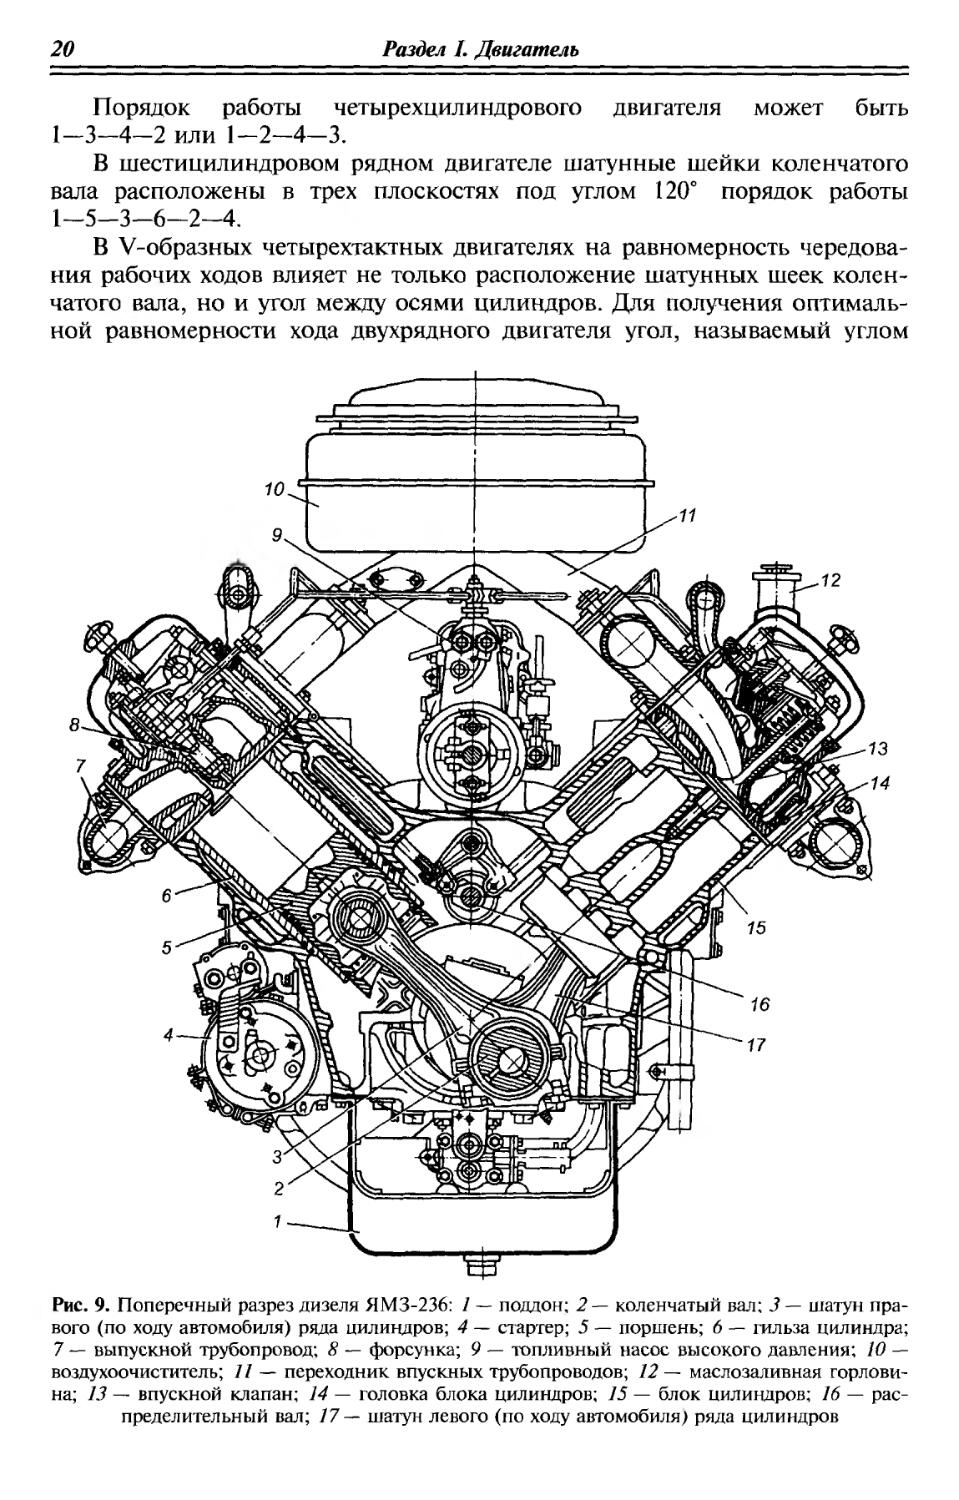 Двигатель КАМАЗ 740 поперечный разрез